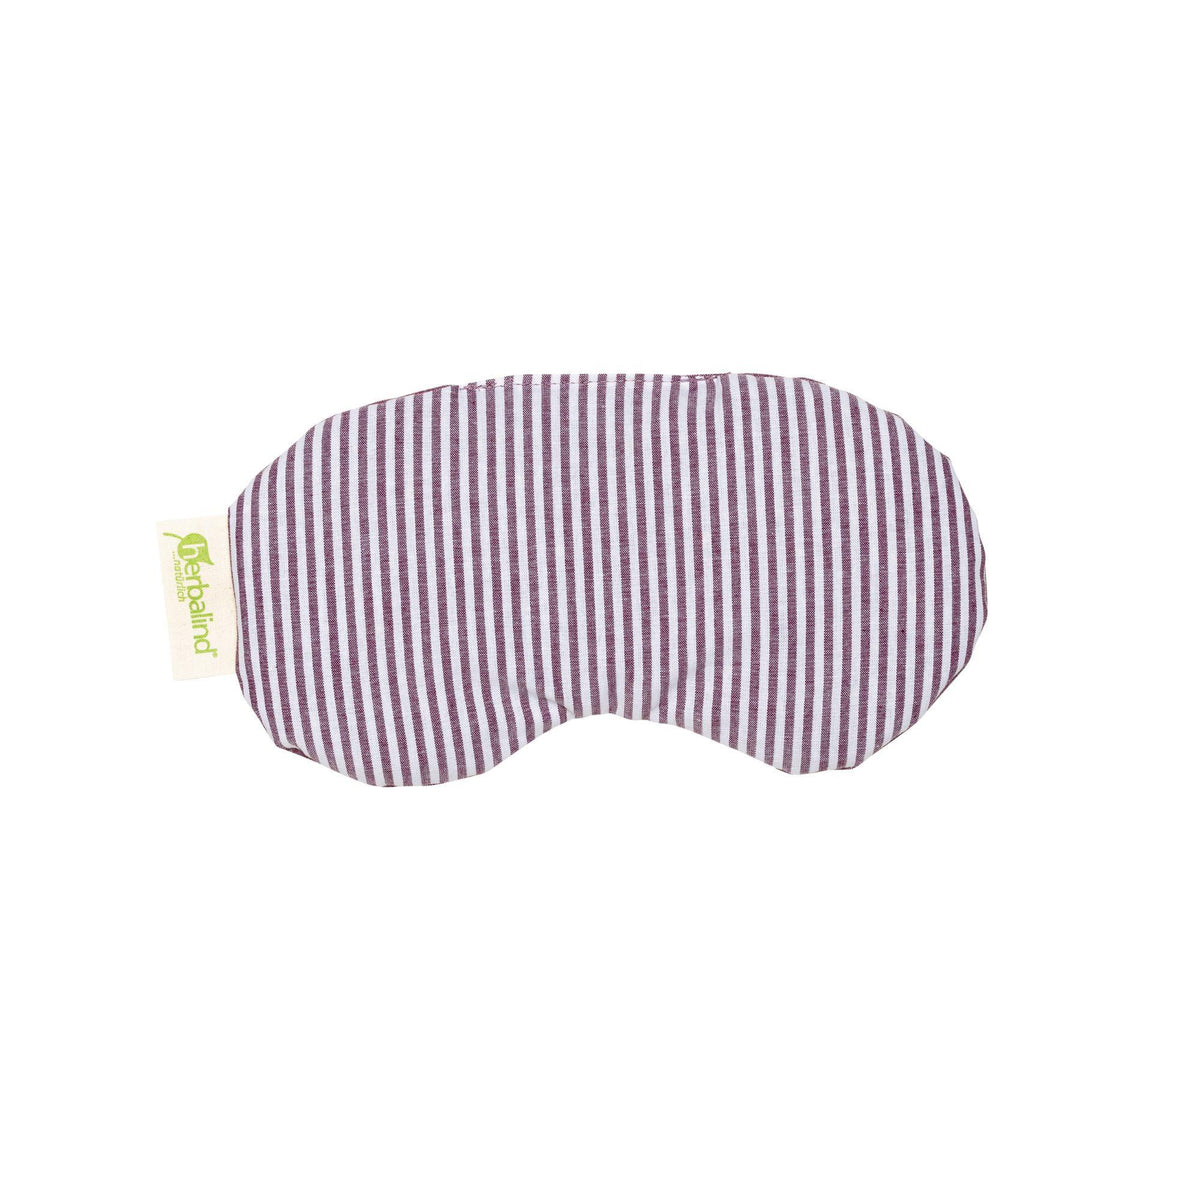 Augenkissen mit Rapssamen/Lavendel Streifen/Melange aubergine